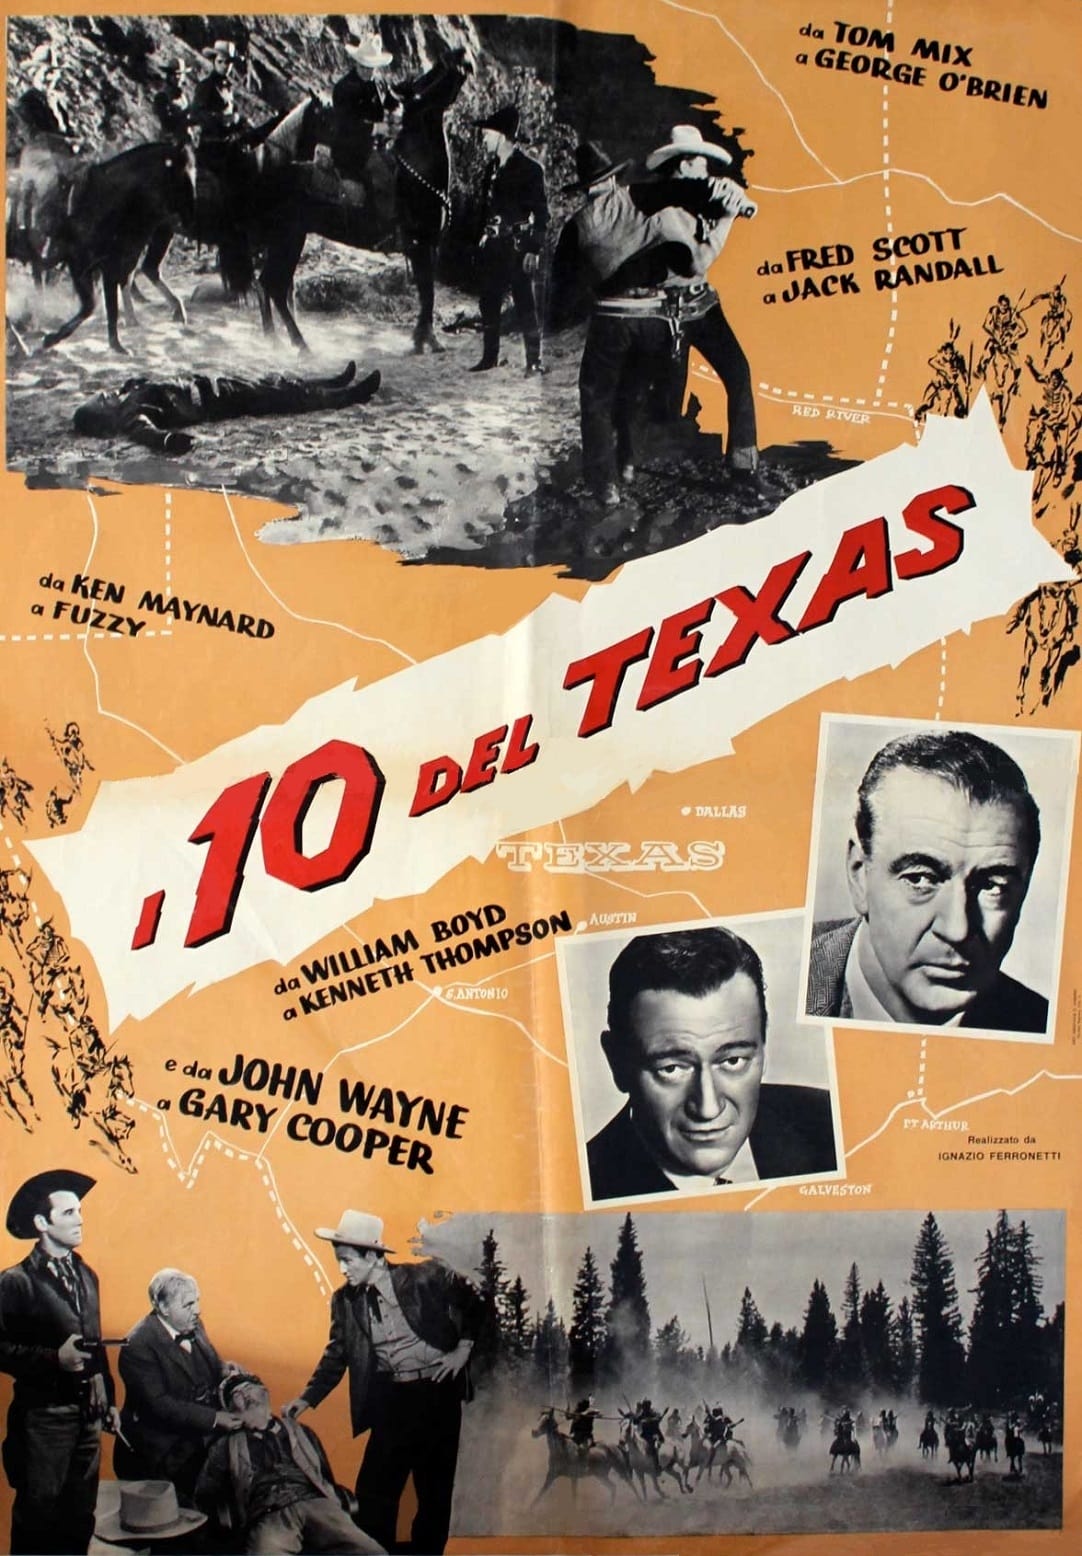 I 10 del Texas (1961)